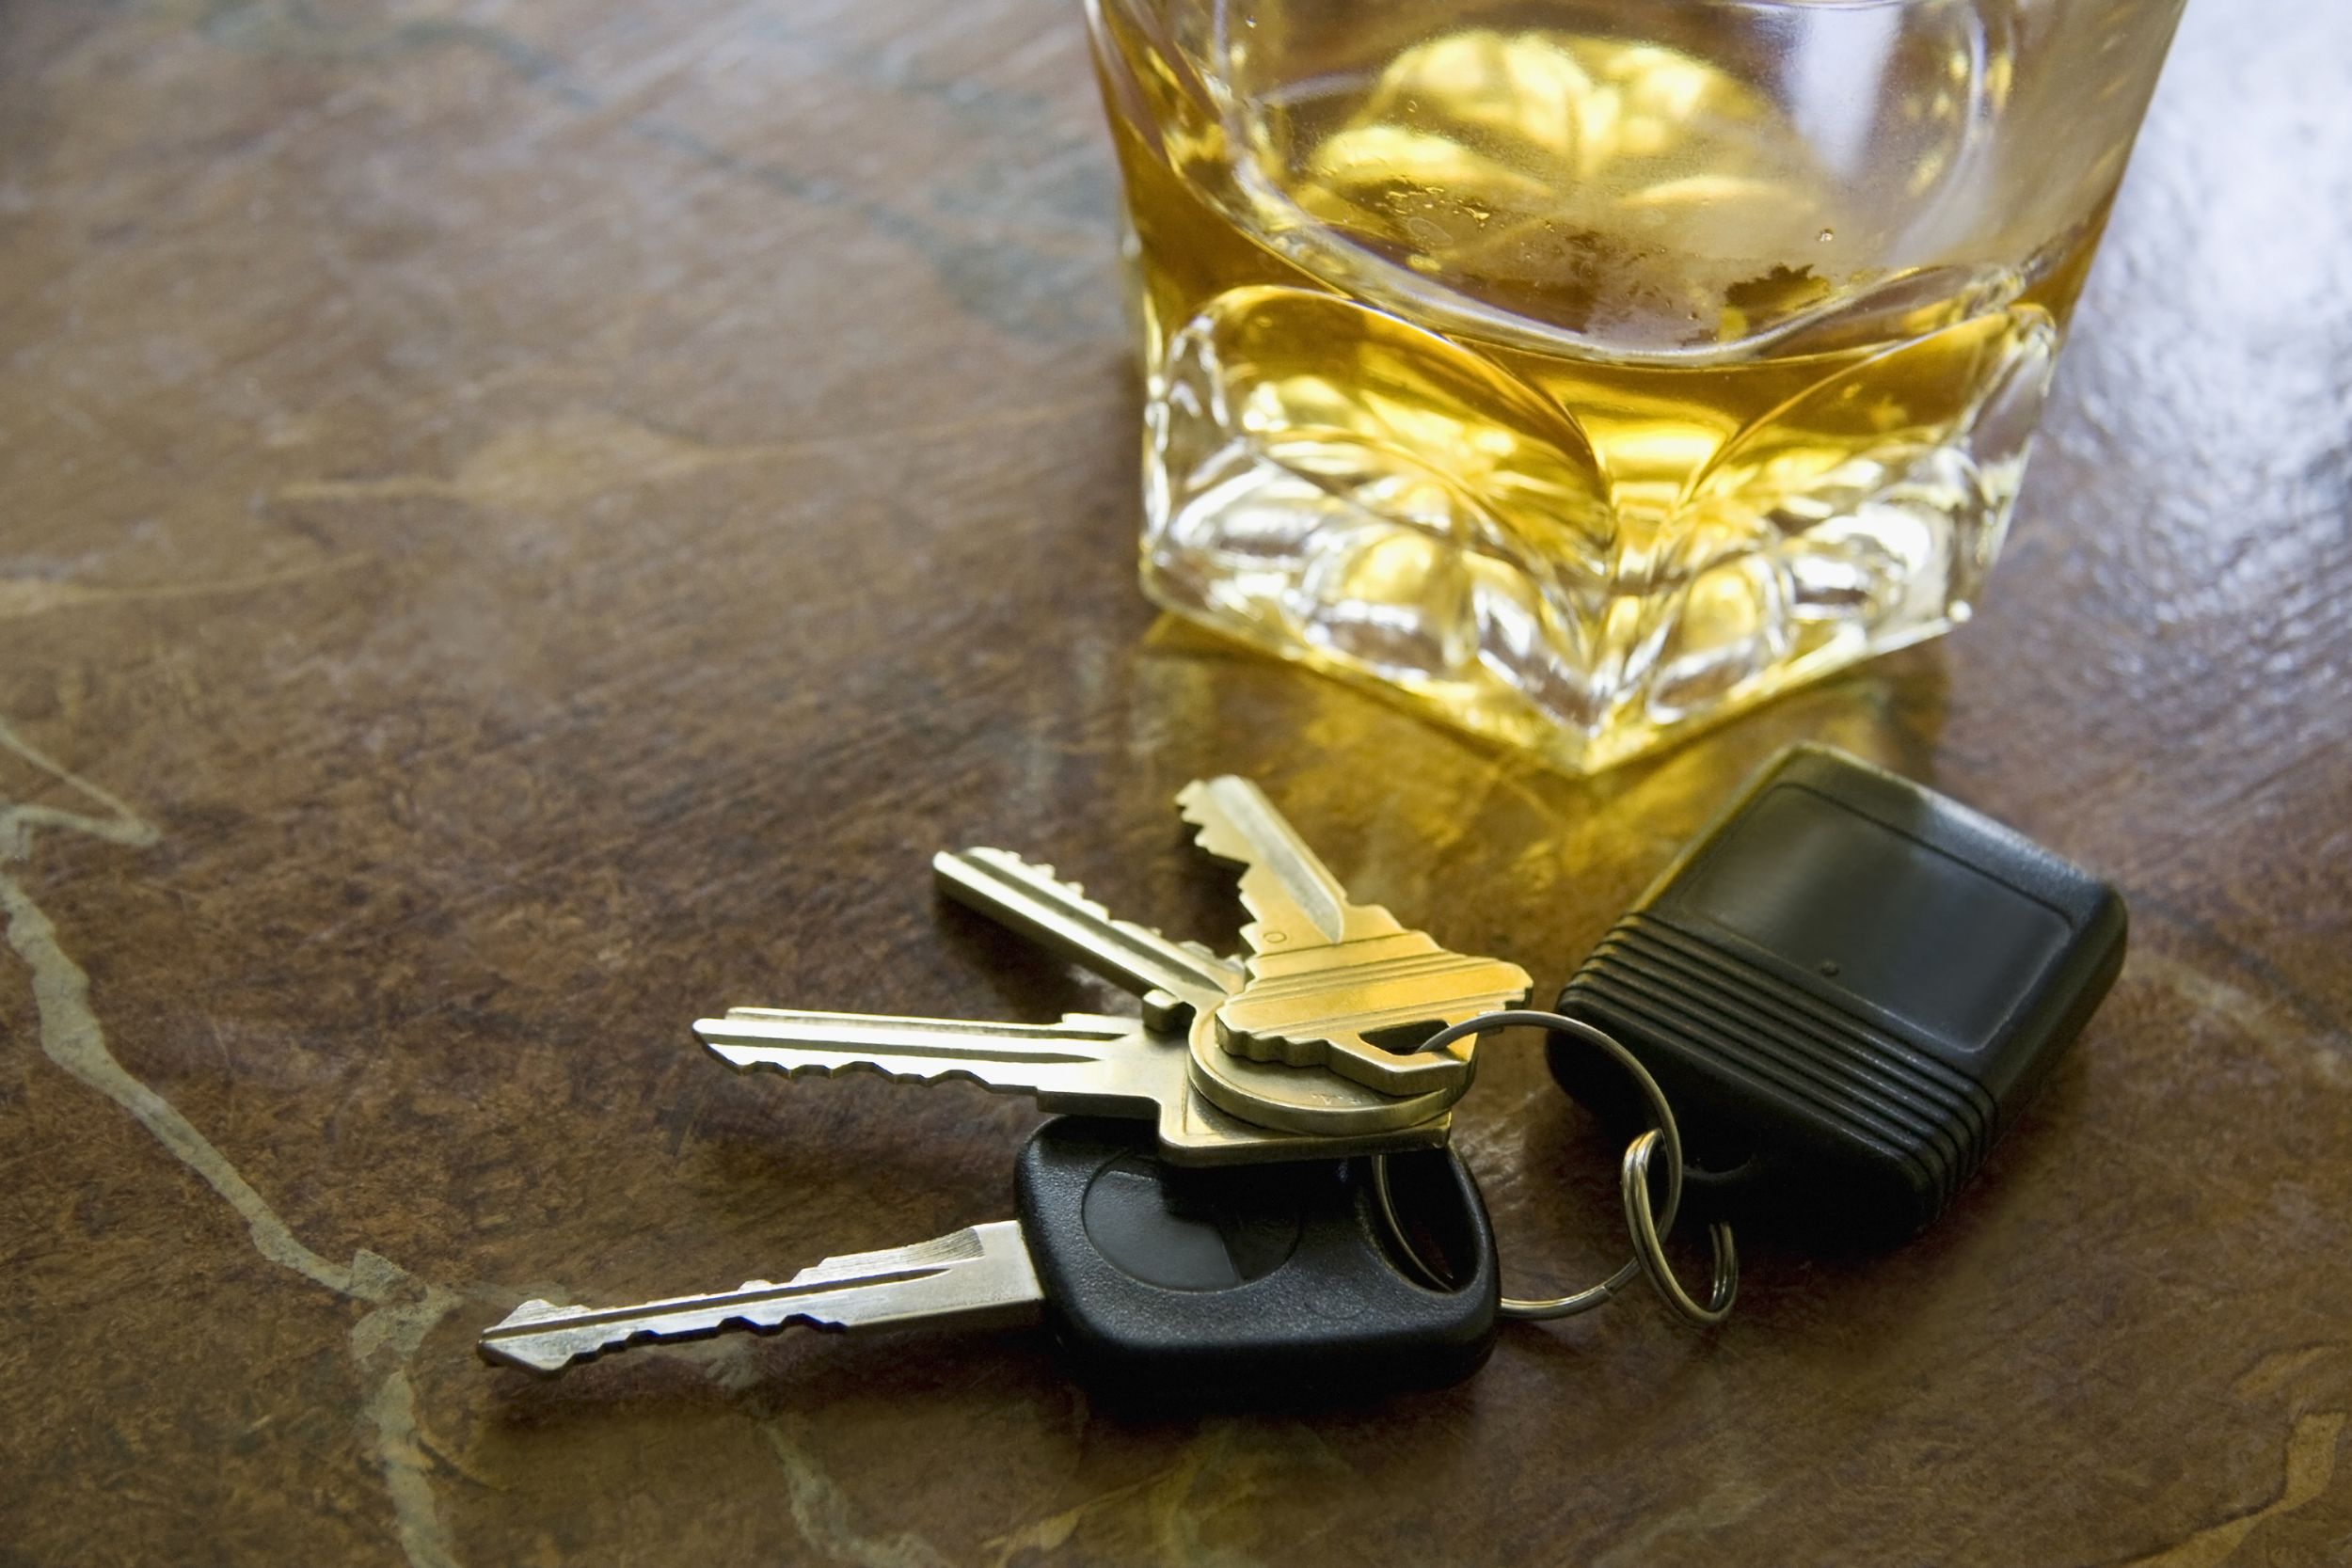 Медицинское освидетельствование на определение состояния опьянения: Управление автомобилем + отстранение от управления